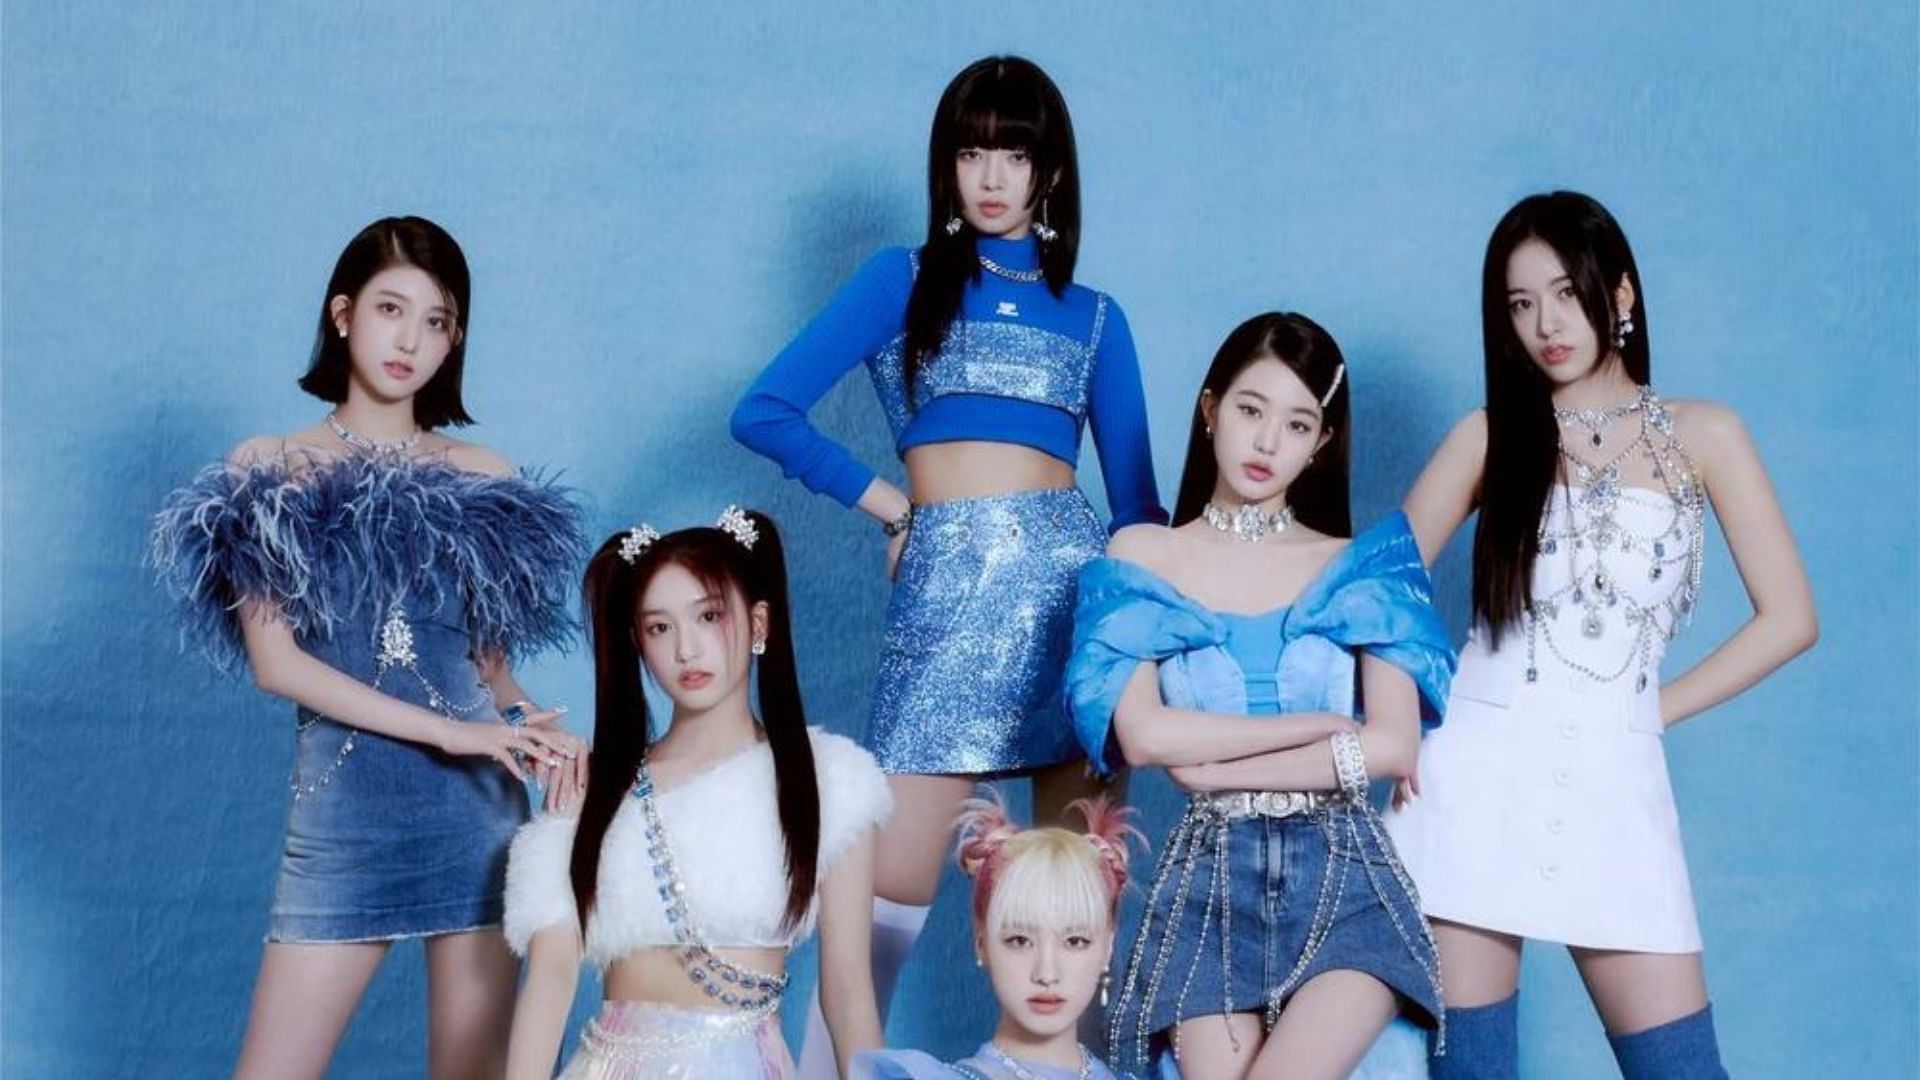 K-pop girl group IVE (Image via Twitter/@IVEstarship)